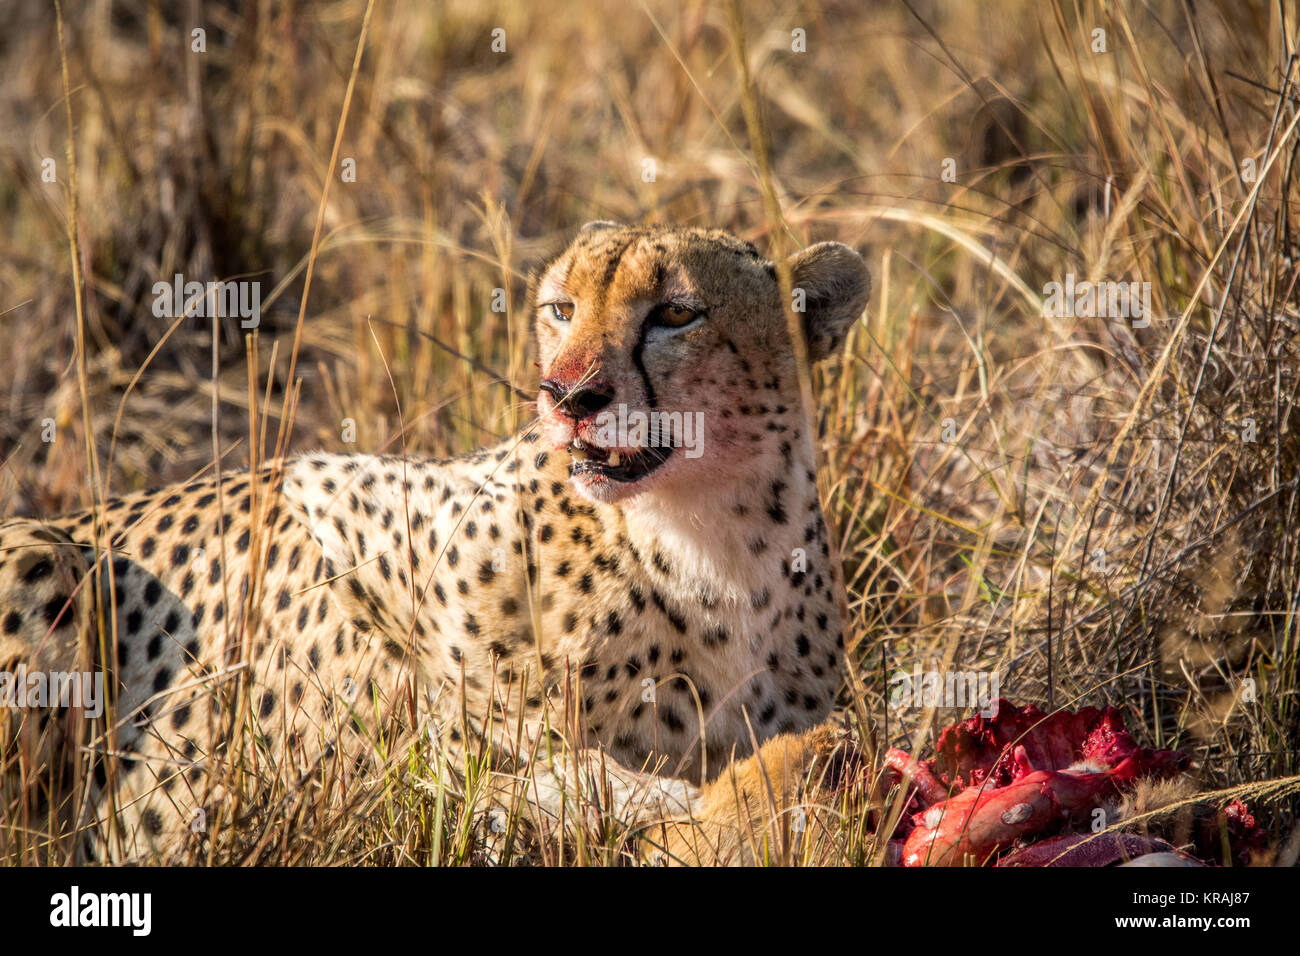 Reedbuck Cheetah comer de un cadáver en la hierba. Foto de stock